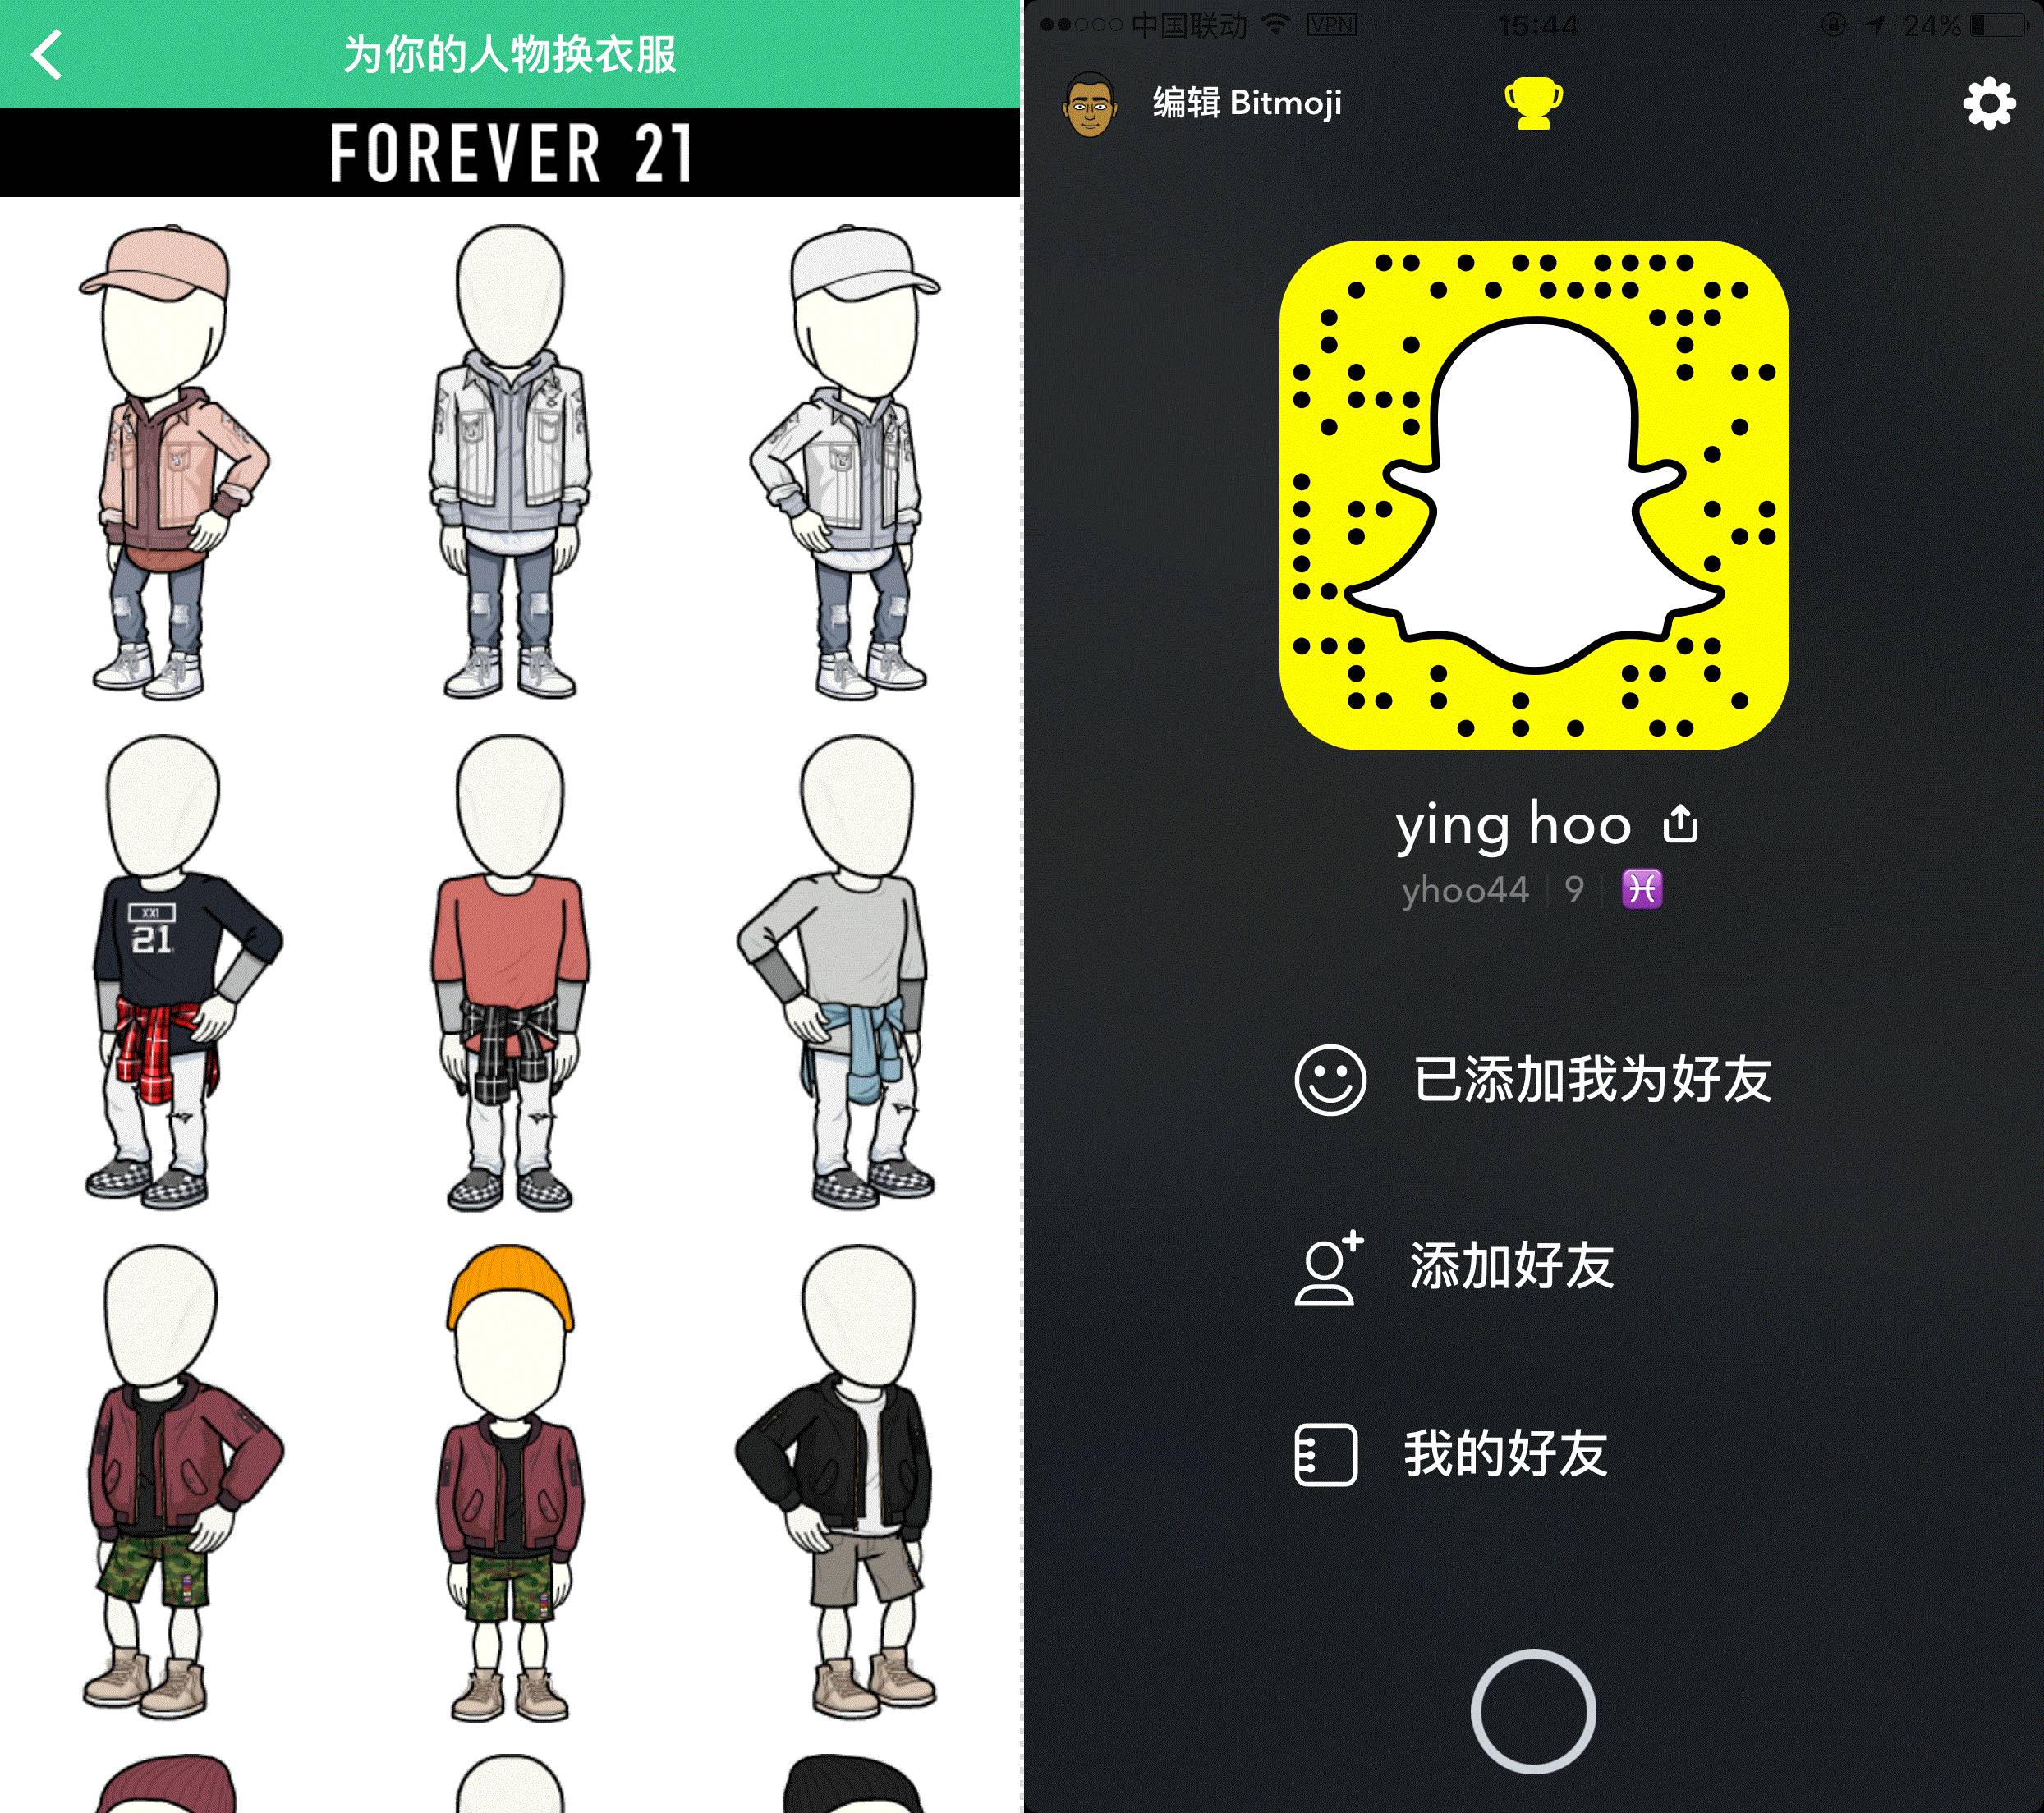 为什么中国没有出现snapchat同类爆款应用?